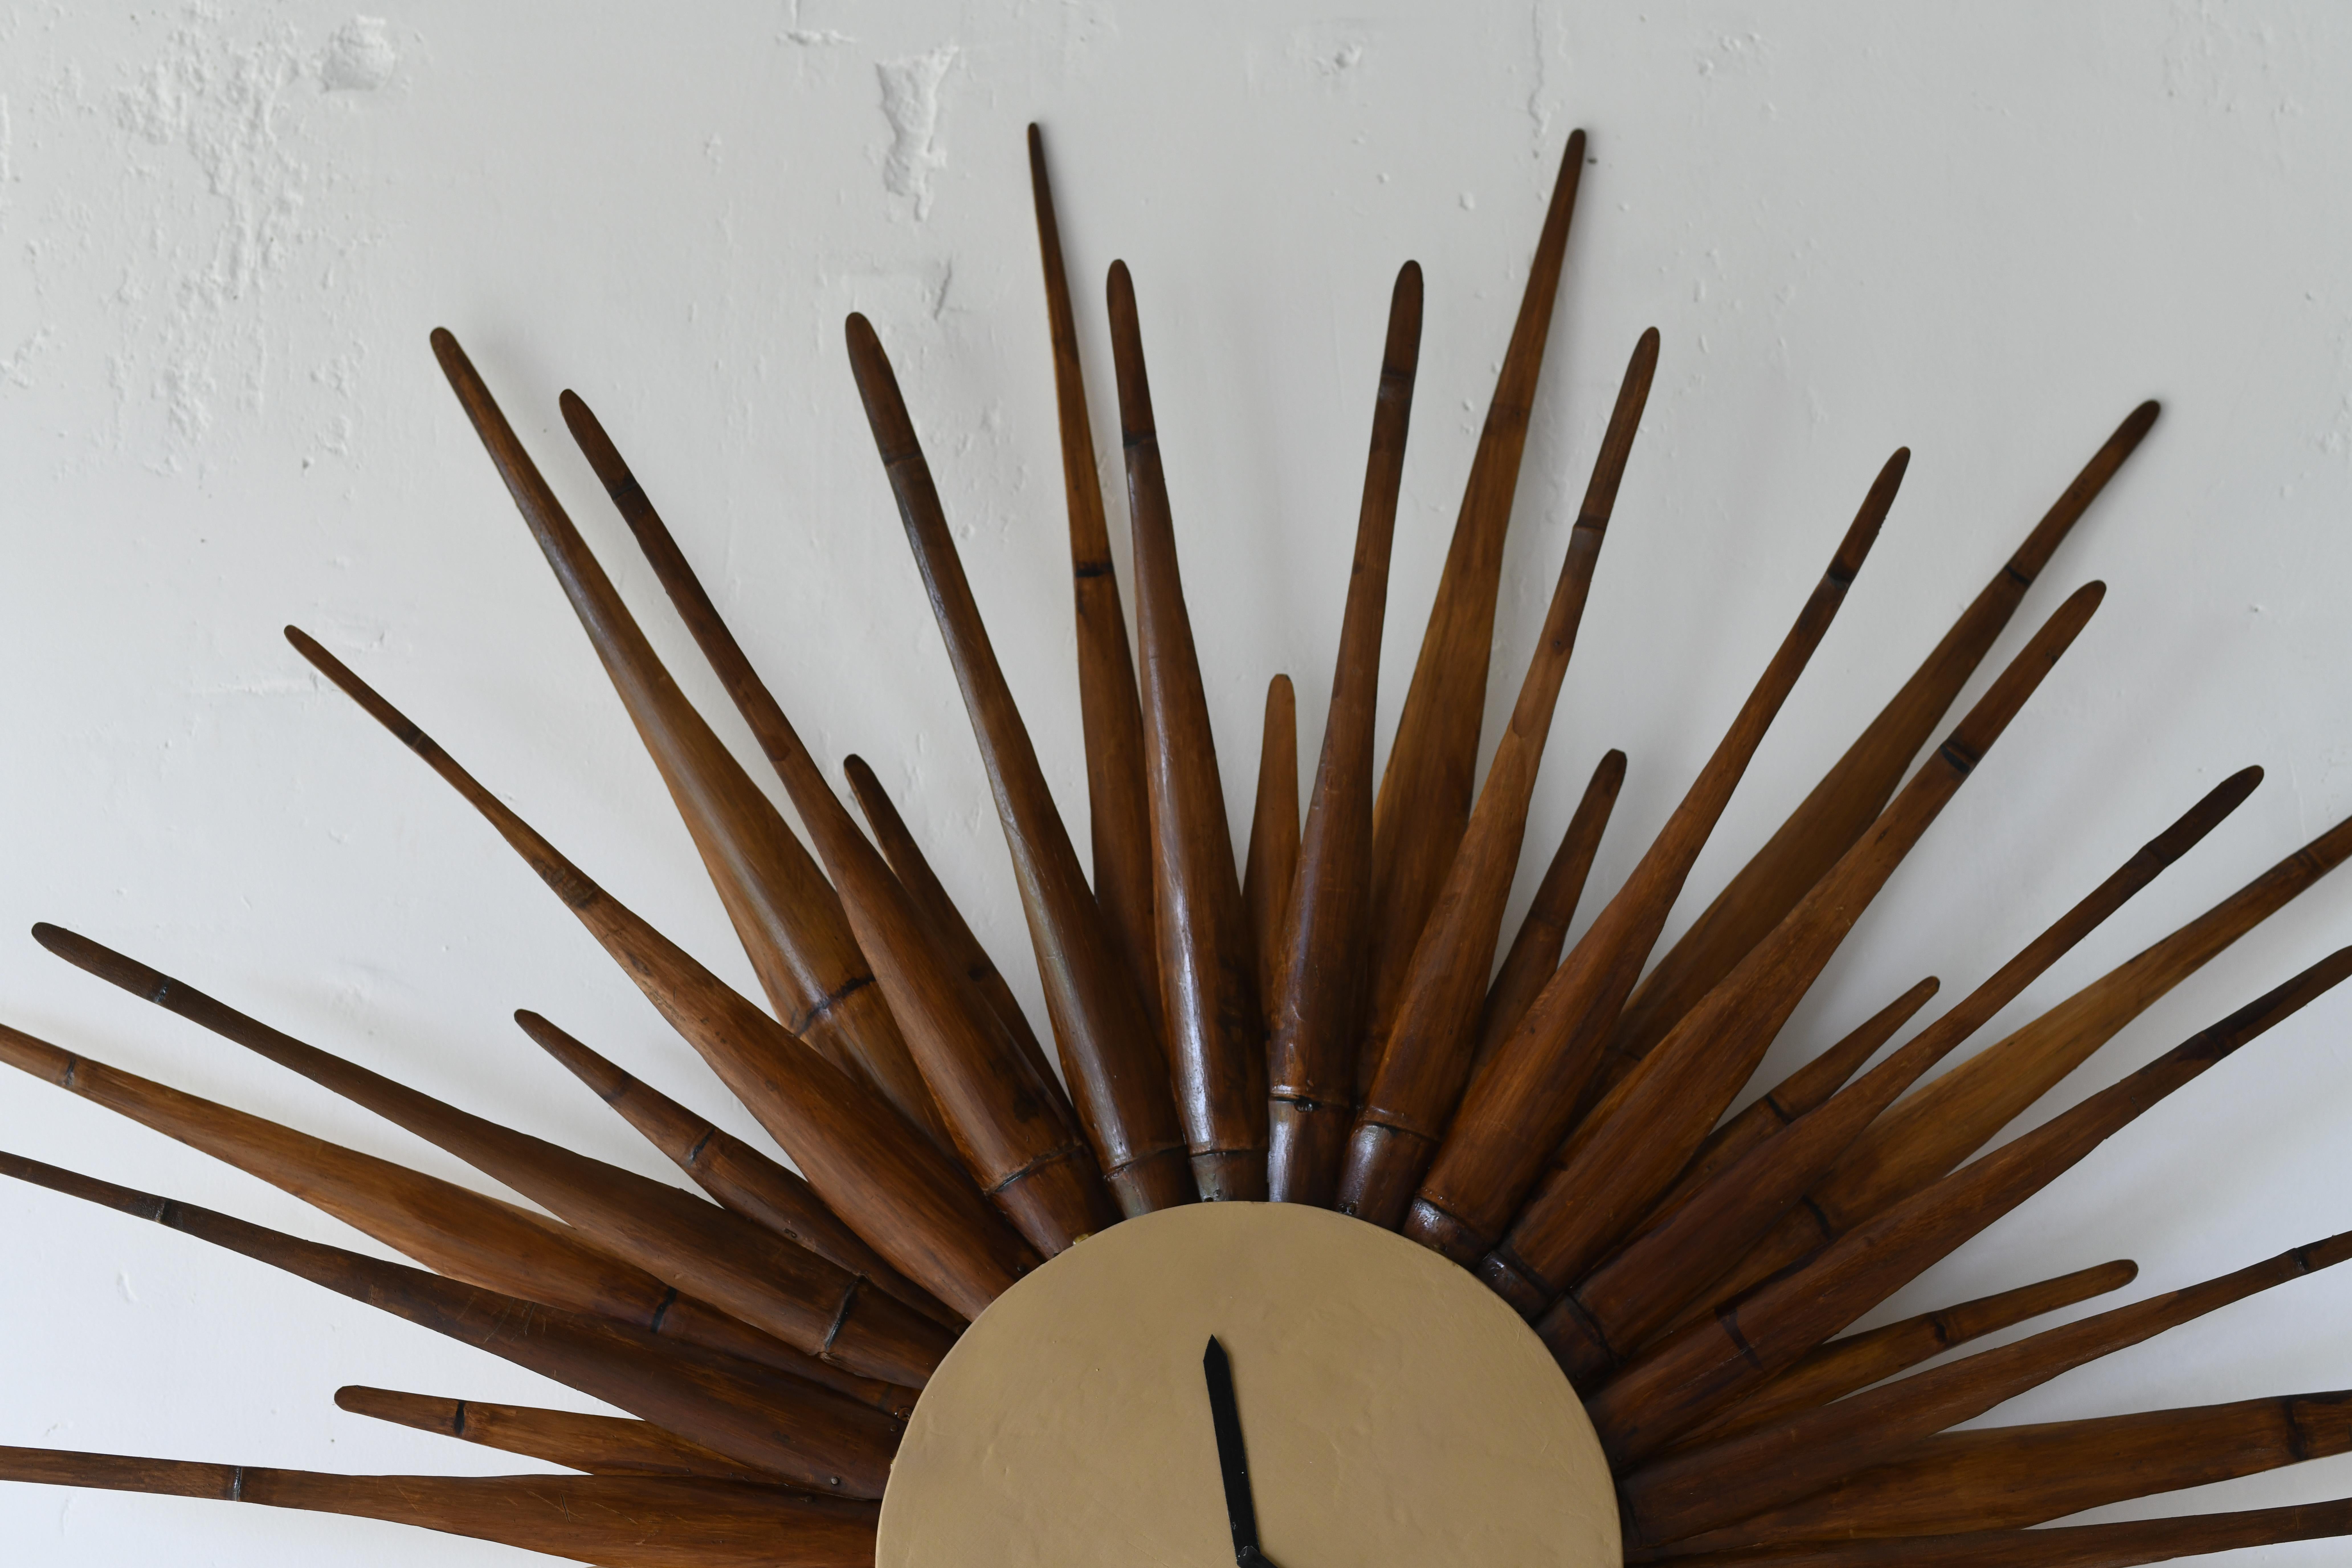 Wir haben ein fabelhaftes Sunburst geschaffen.
Sonnenschliff-Uhr im modernen Stil der Jahrhundertmitte. Es handelt sich um eine patinierte Version mit einem goldenen Gesicht und 48 handgeschnitzten Bambusspeichen mit Struktur. An der Wand montiert